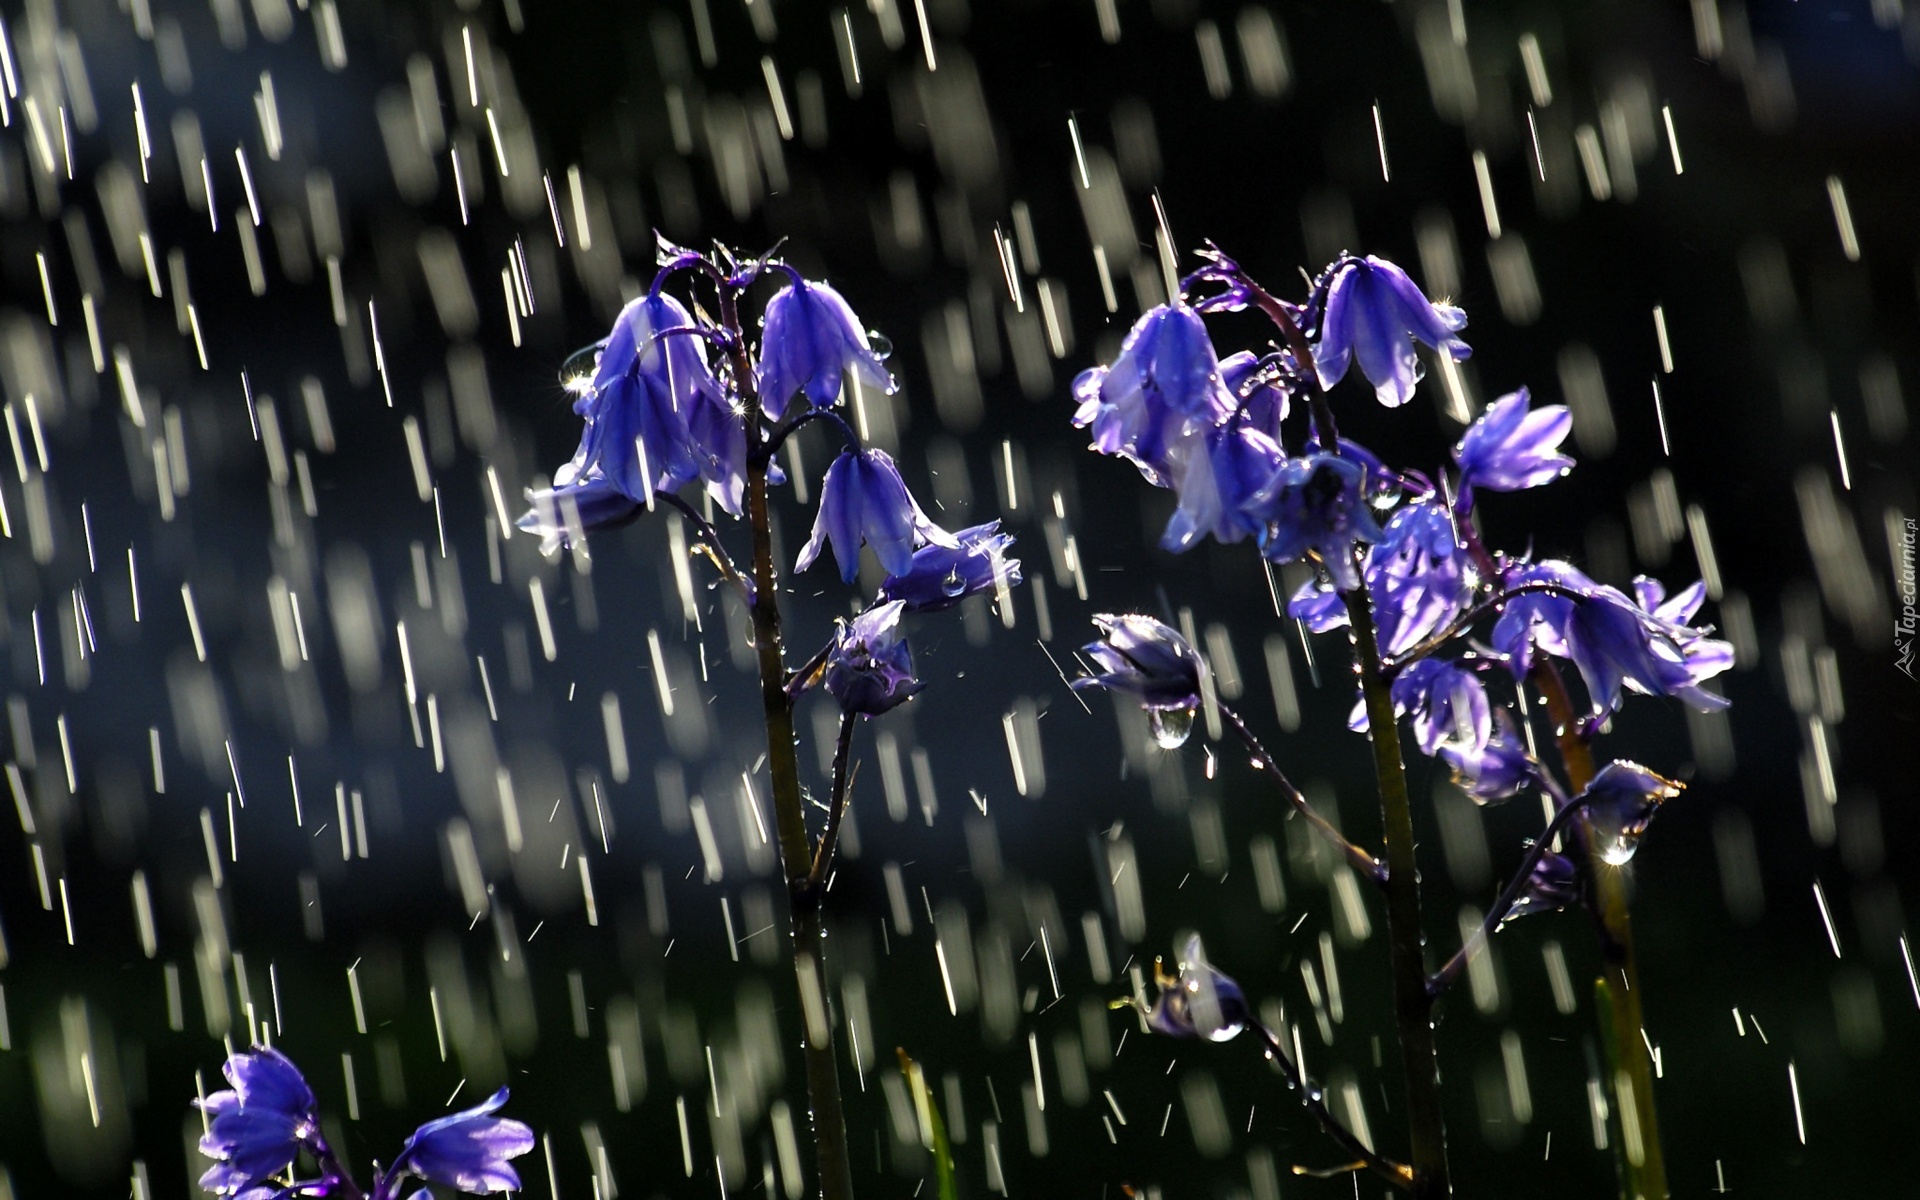 Deszcz, Niebieskie, Kwiatuszki, Dzwoneczki